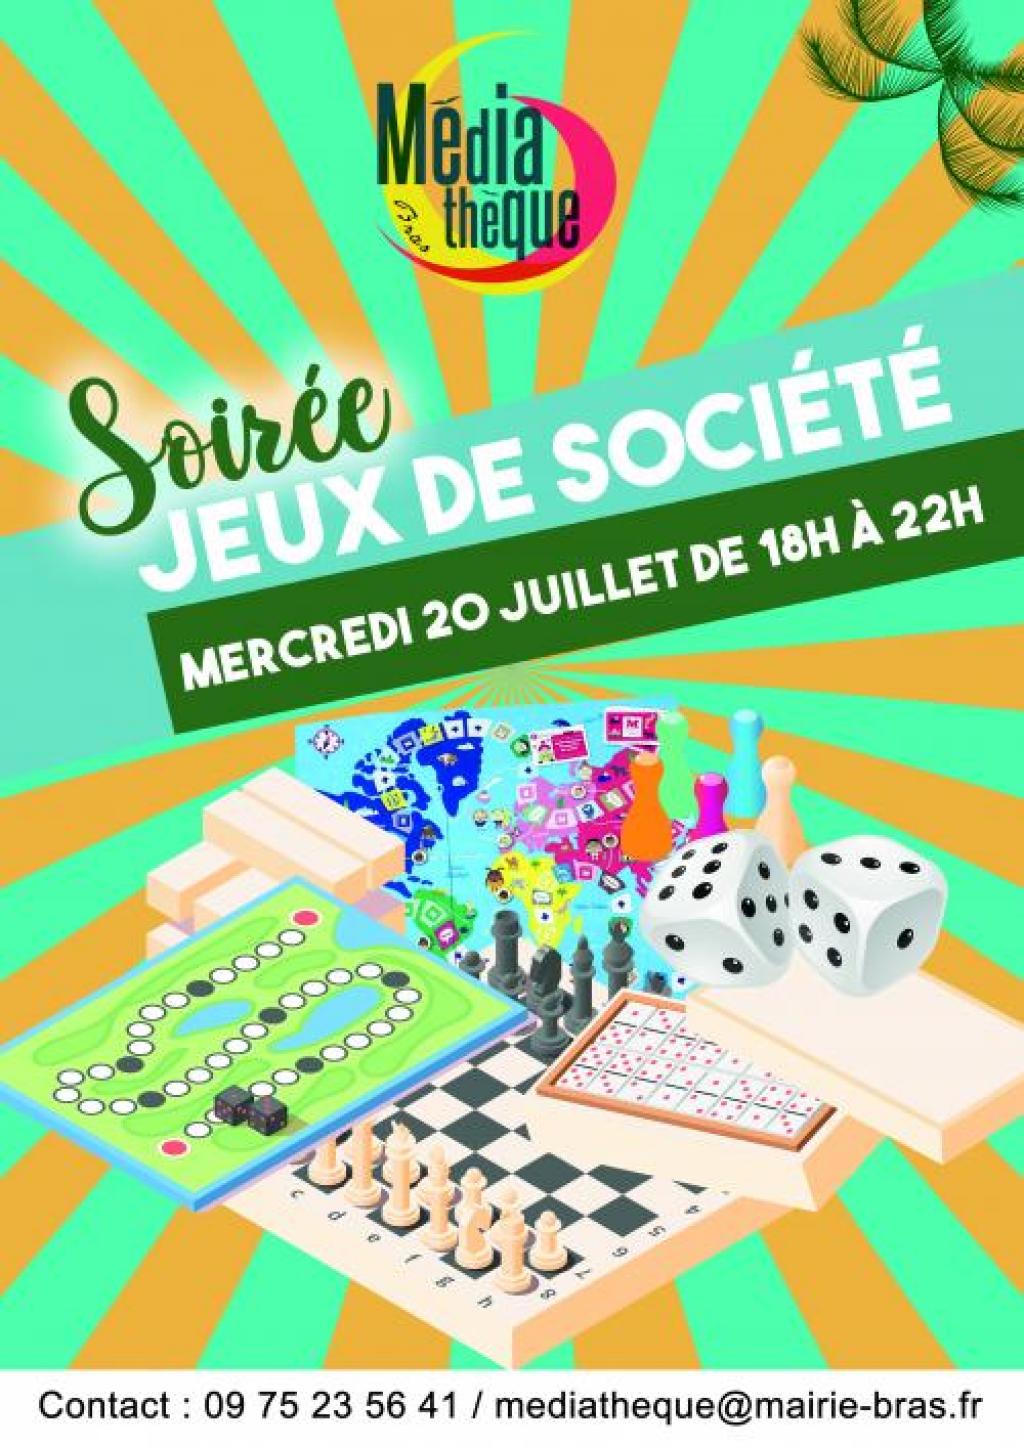 Soirée Jeux de société • Site Officiel de Mallemort de Provence